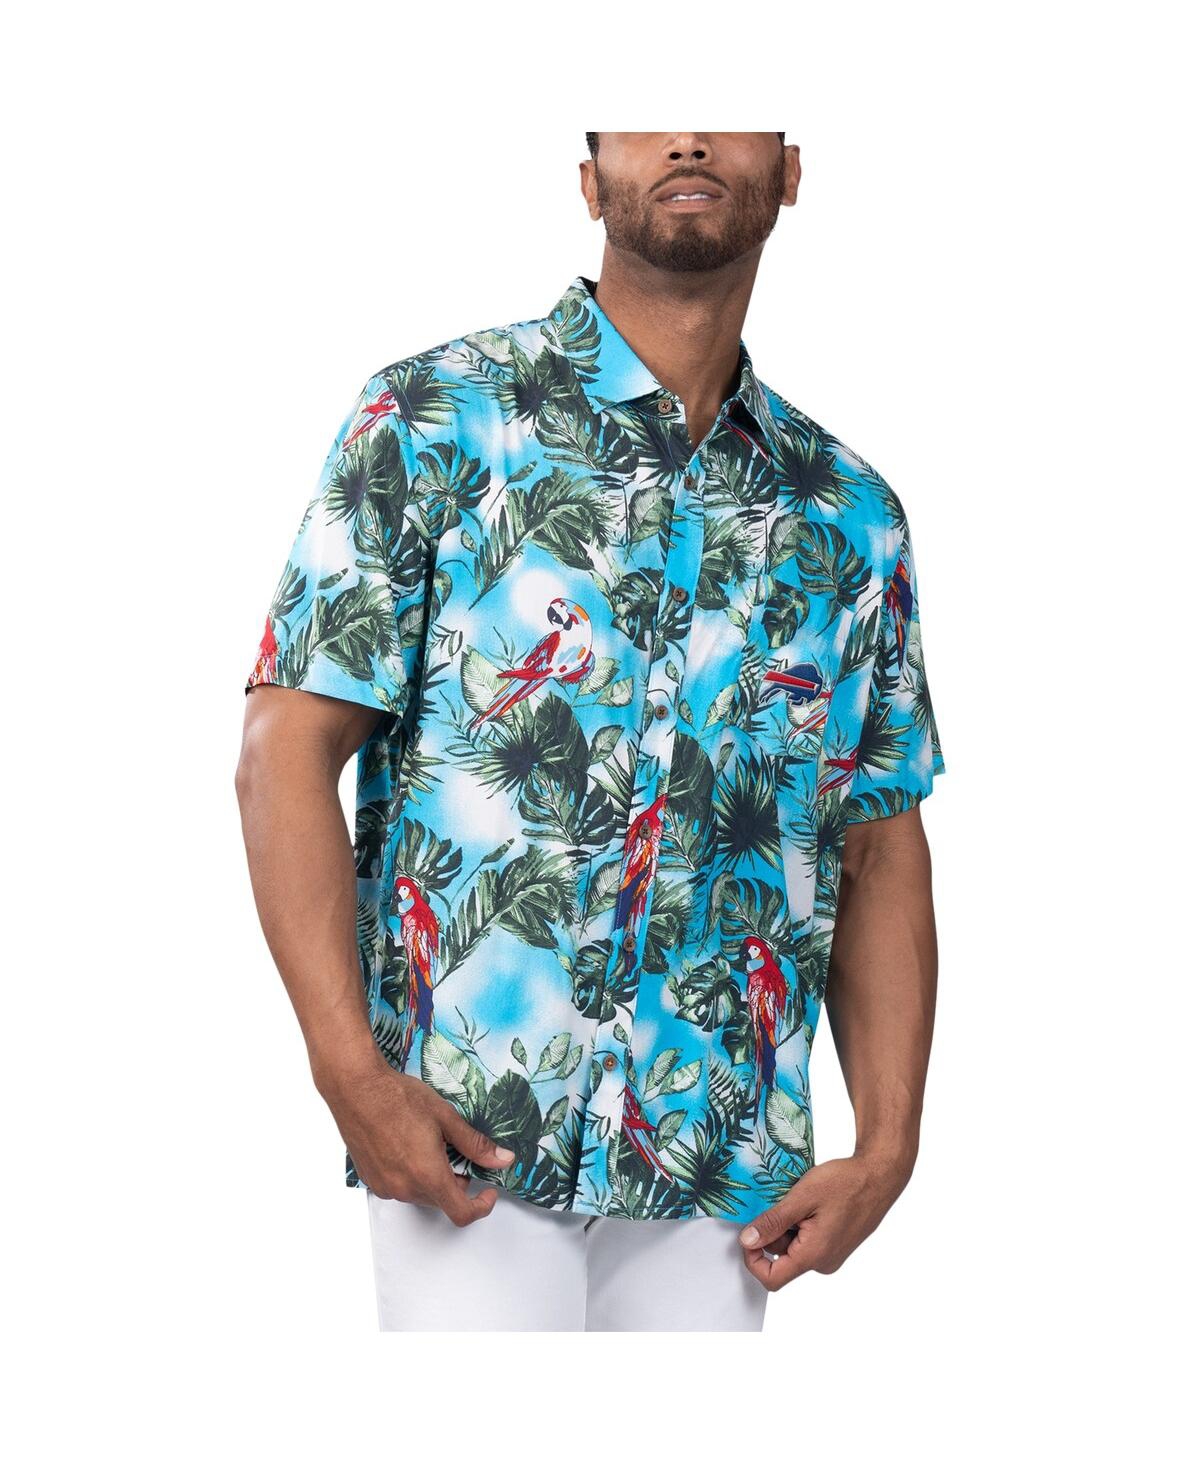 Shop Margaritaville Men's  Light Blue Buffalo Bills Jungle Parrot Party Button-up Shirt